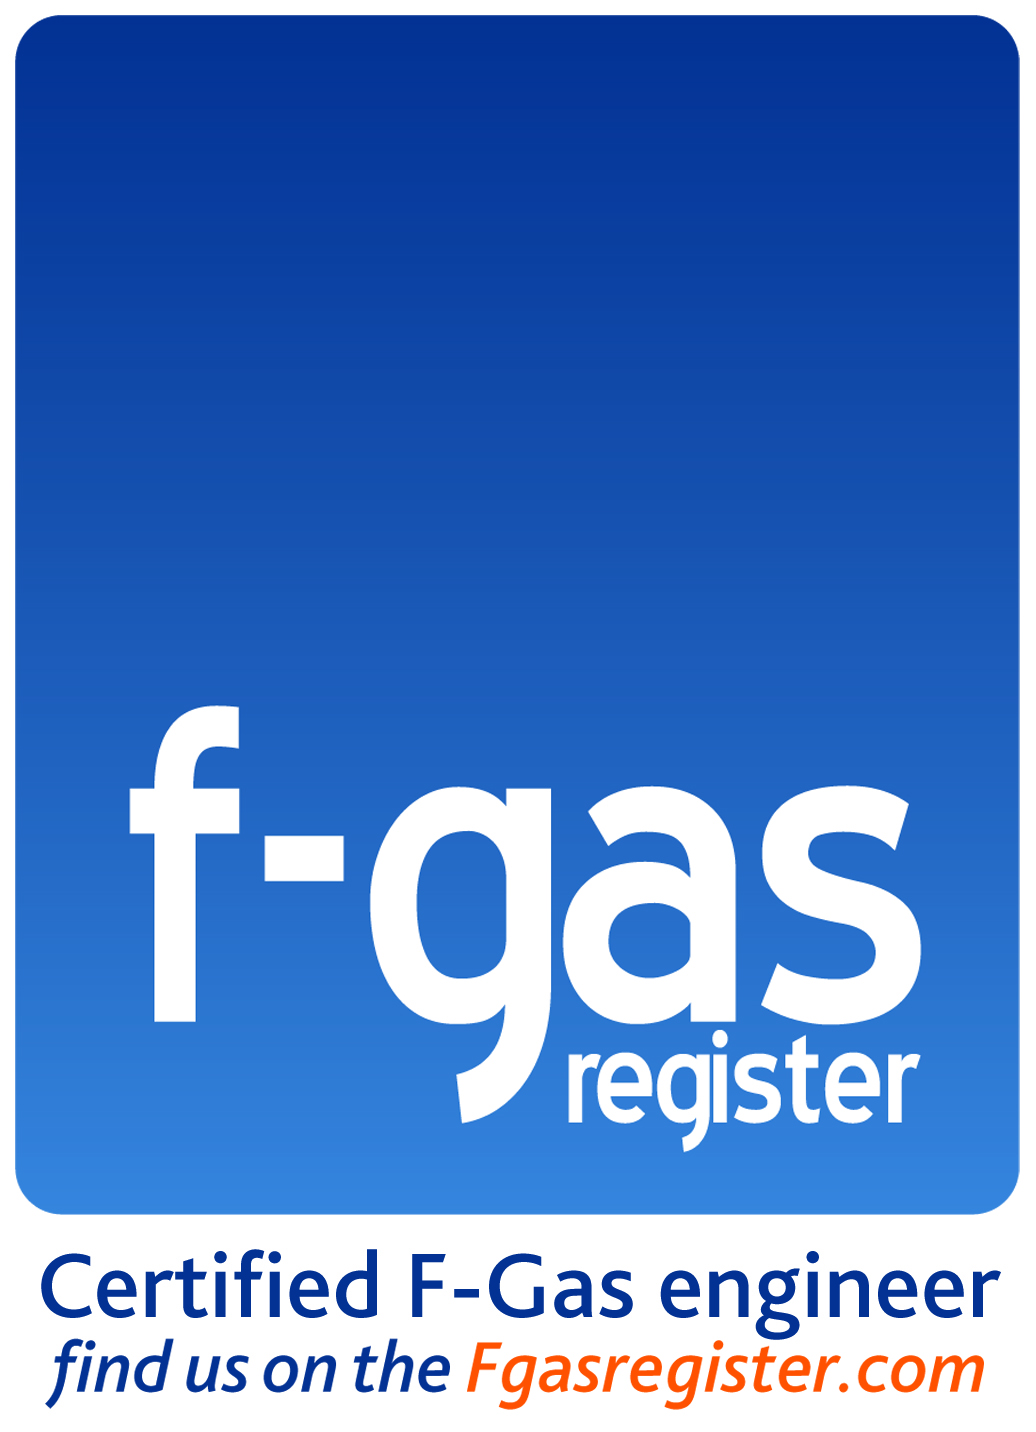 Fgas certified logo